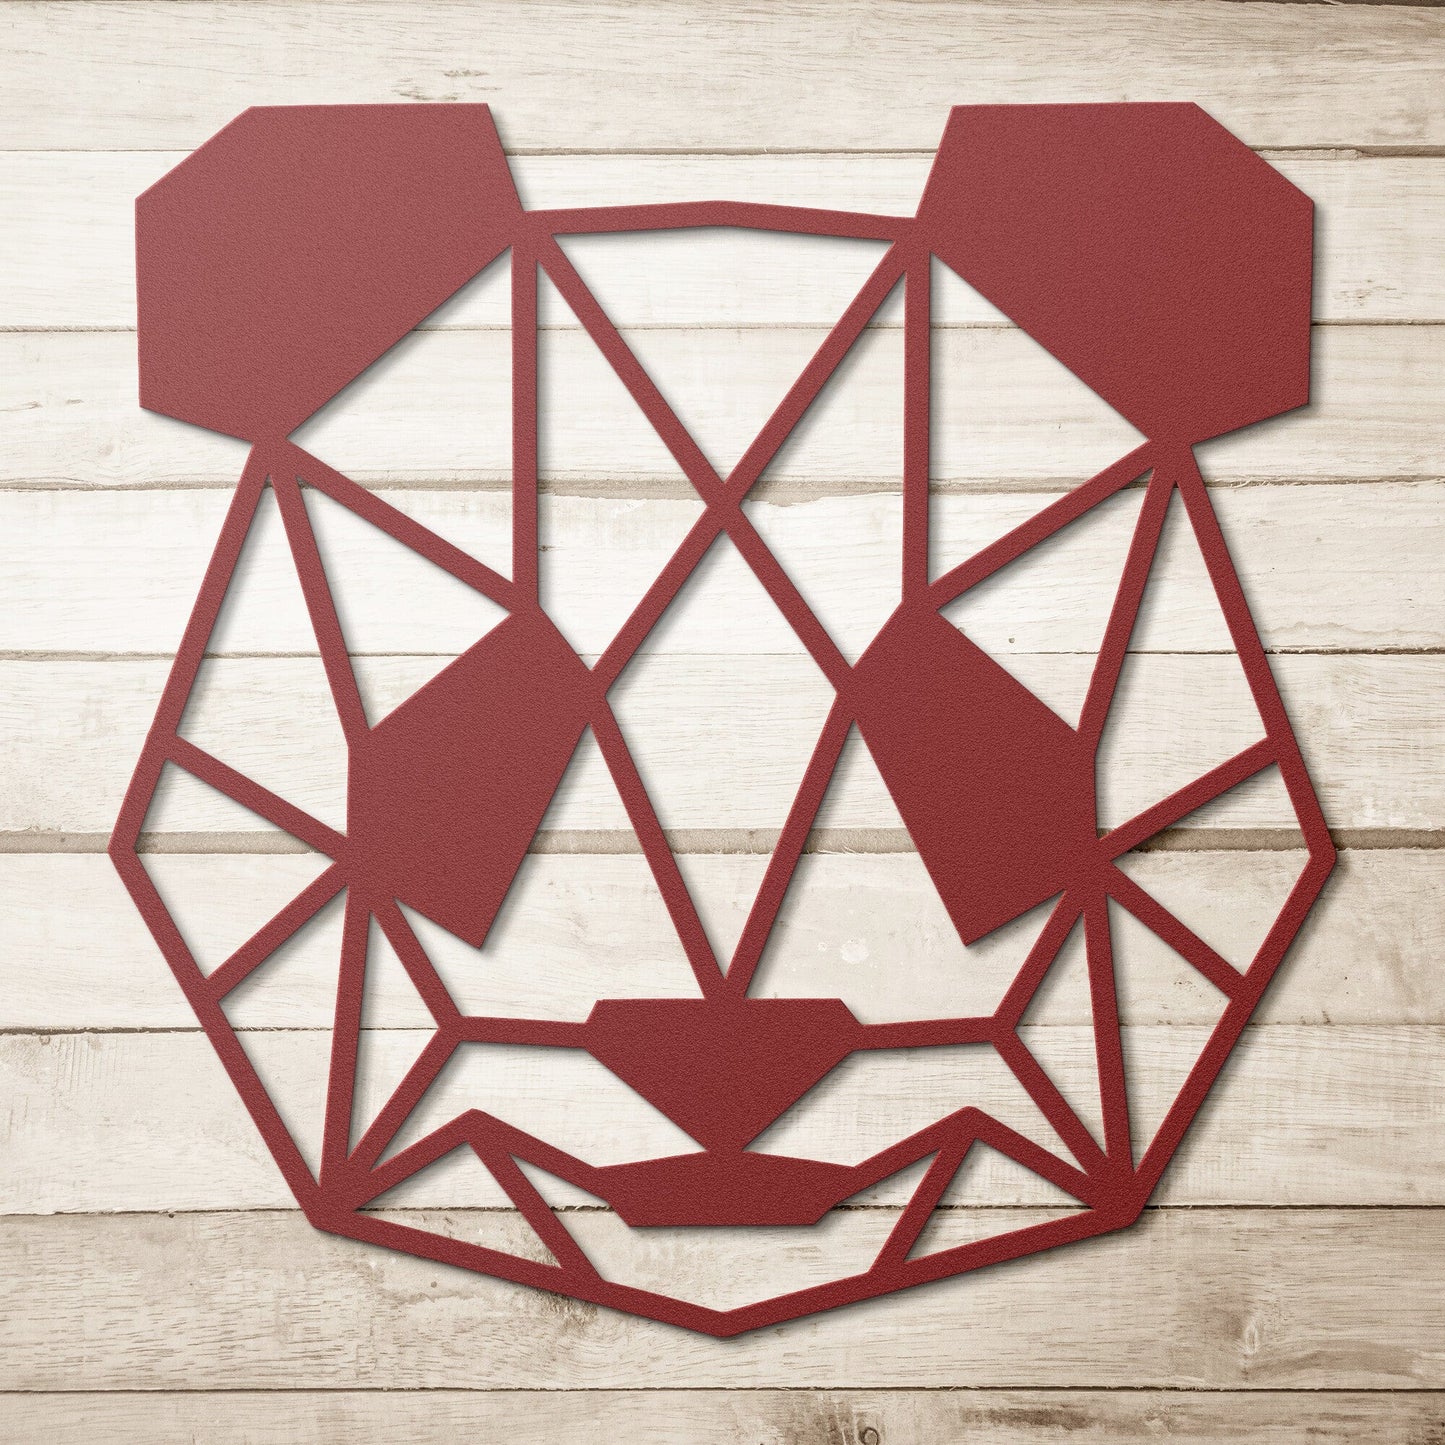 Panda Bear Geometric Head Metal Art Wall Sign